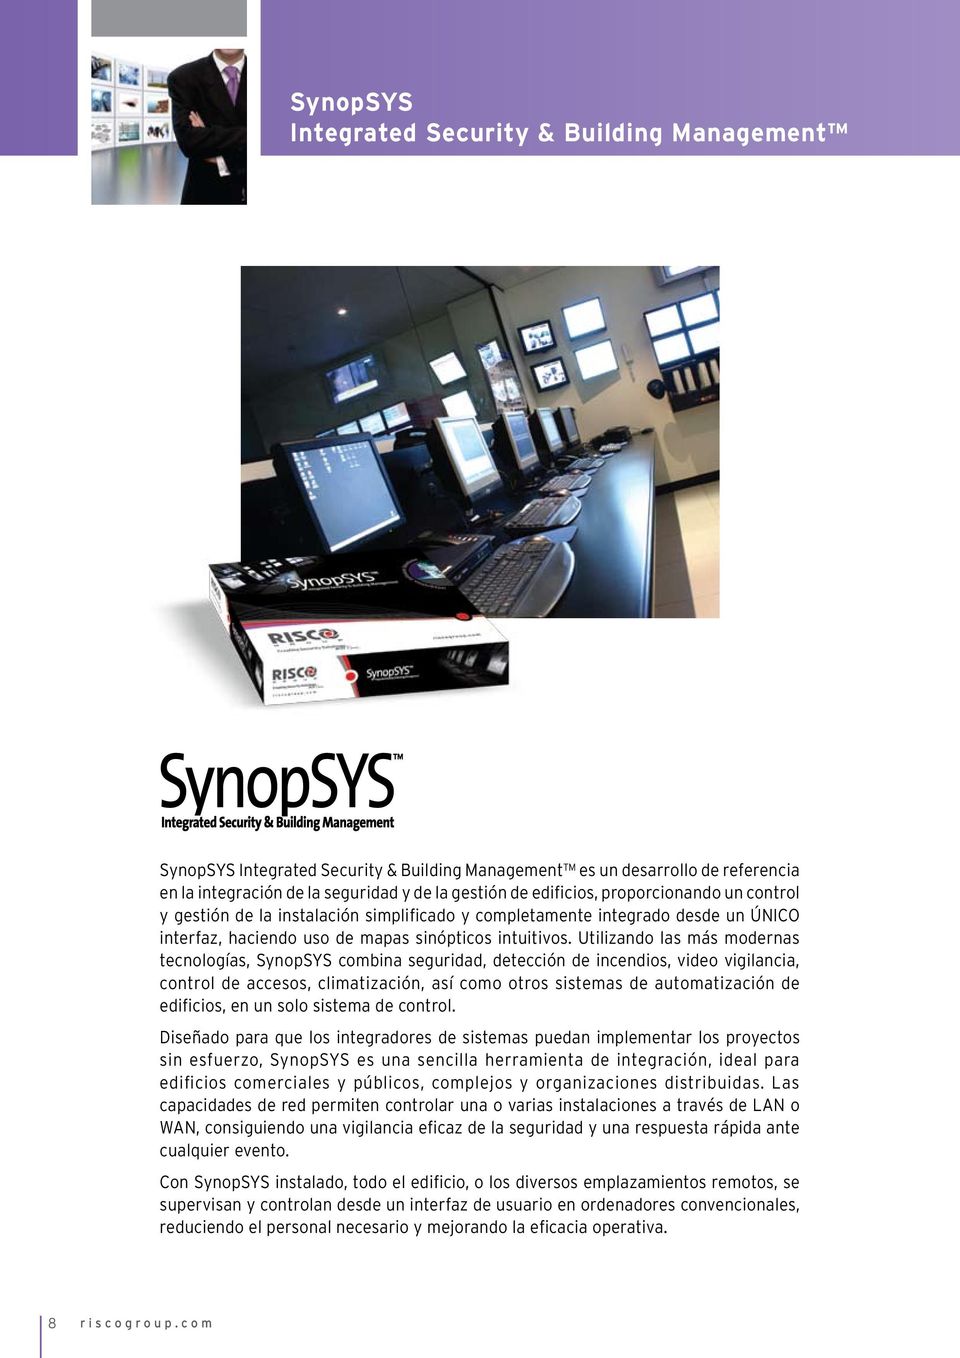 Utilizando las más modernas tecnologías, SynopSYS combina seguridad, detección de incendios, video vigilancia, control de accesos, climatización, así como otros sistemas de automatización de